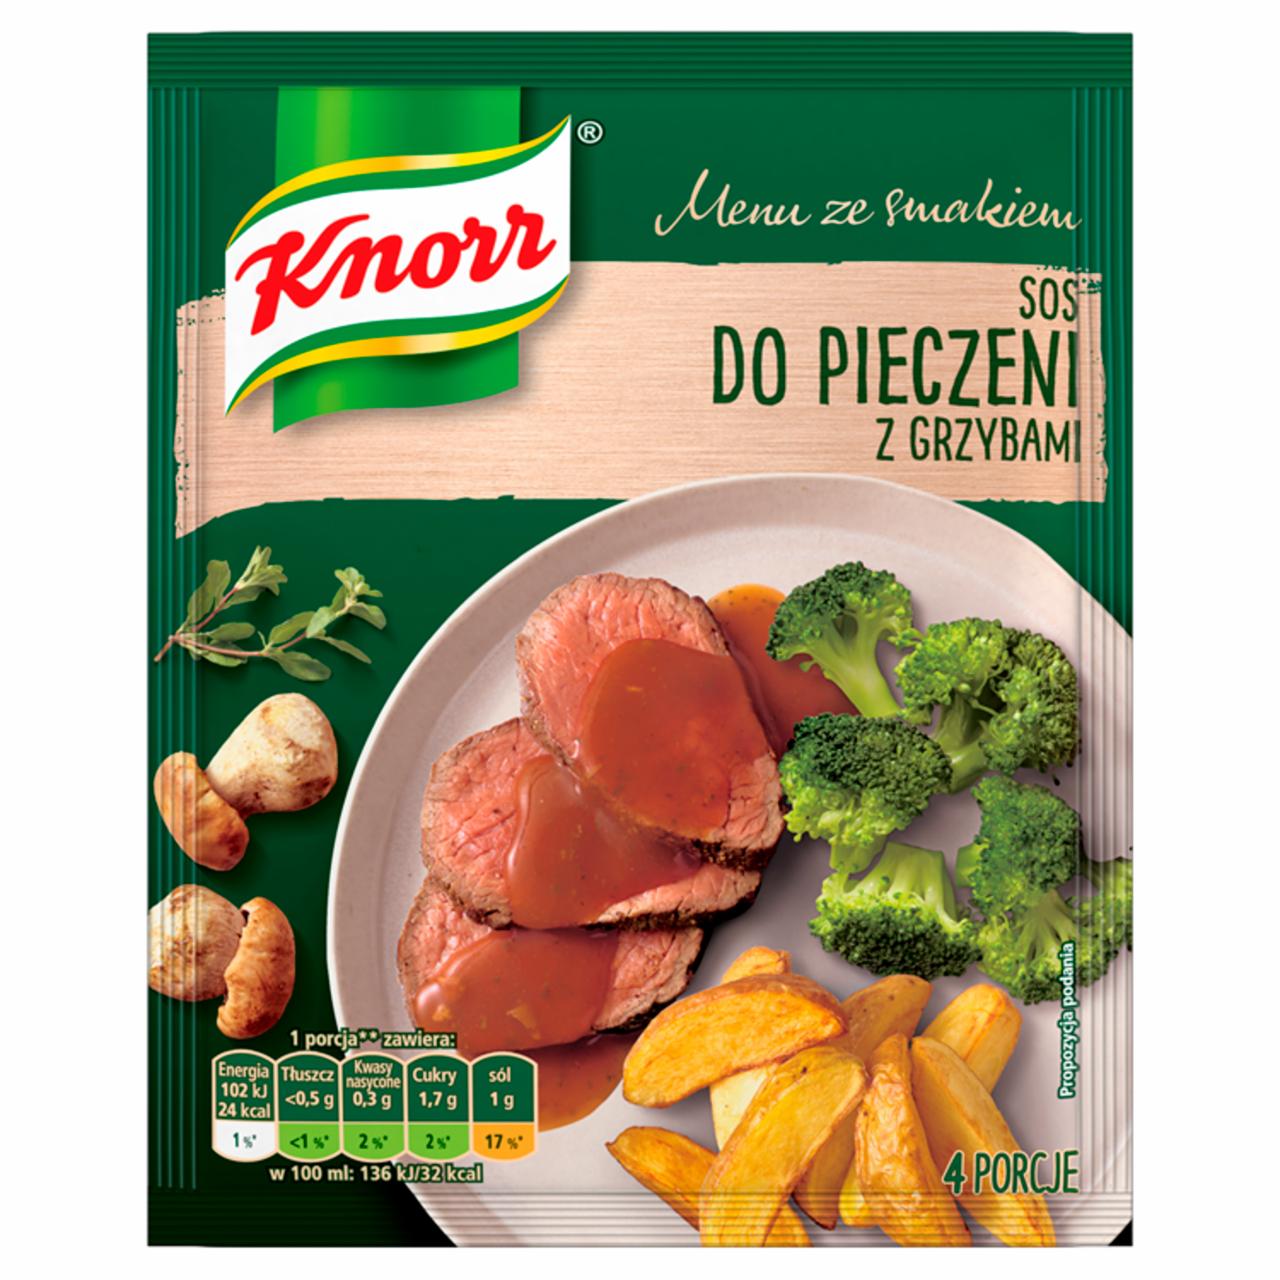 Zdjęcia - Knorr Menu ze smakiem Sos do pieczeni z grzybami 29 g